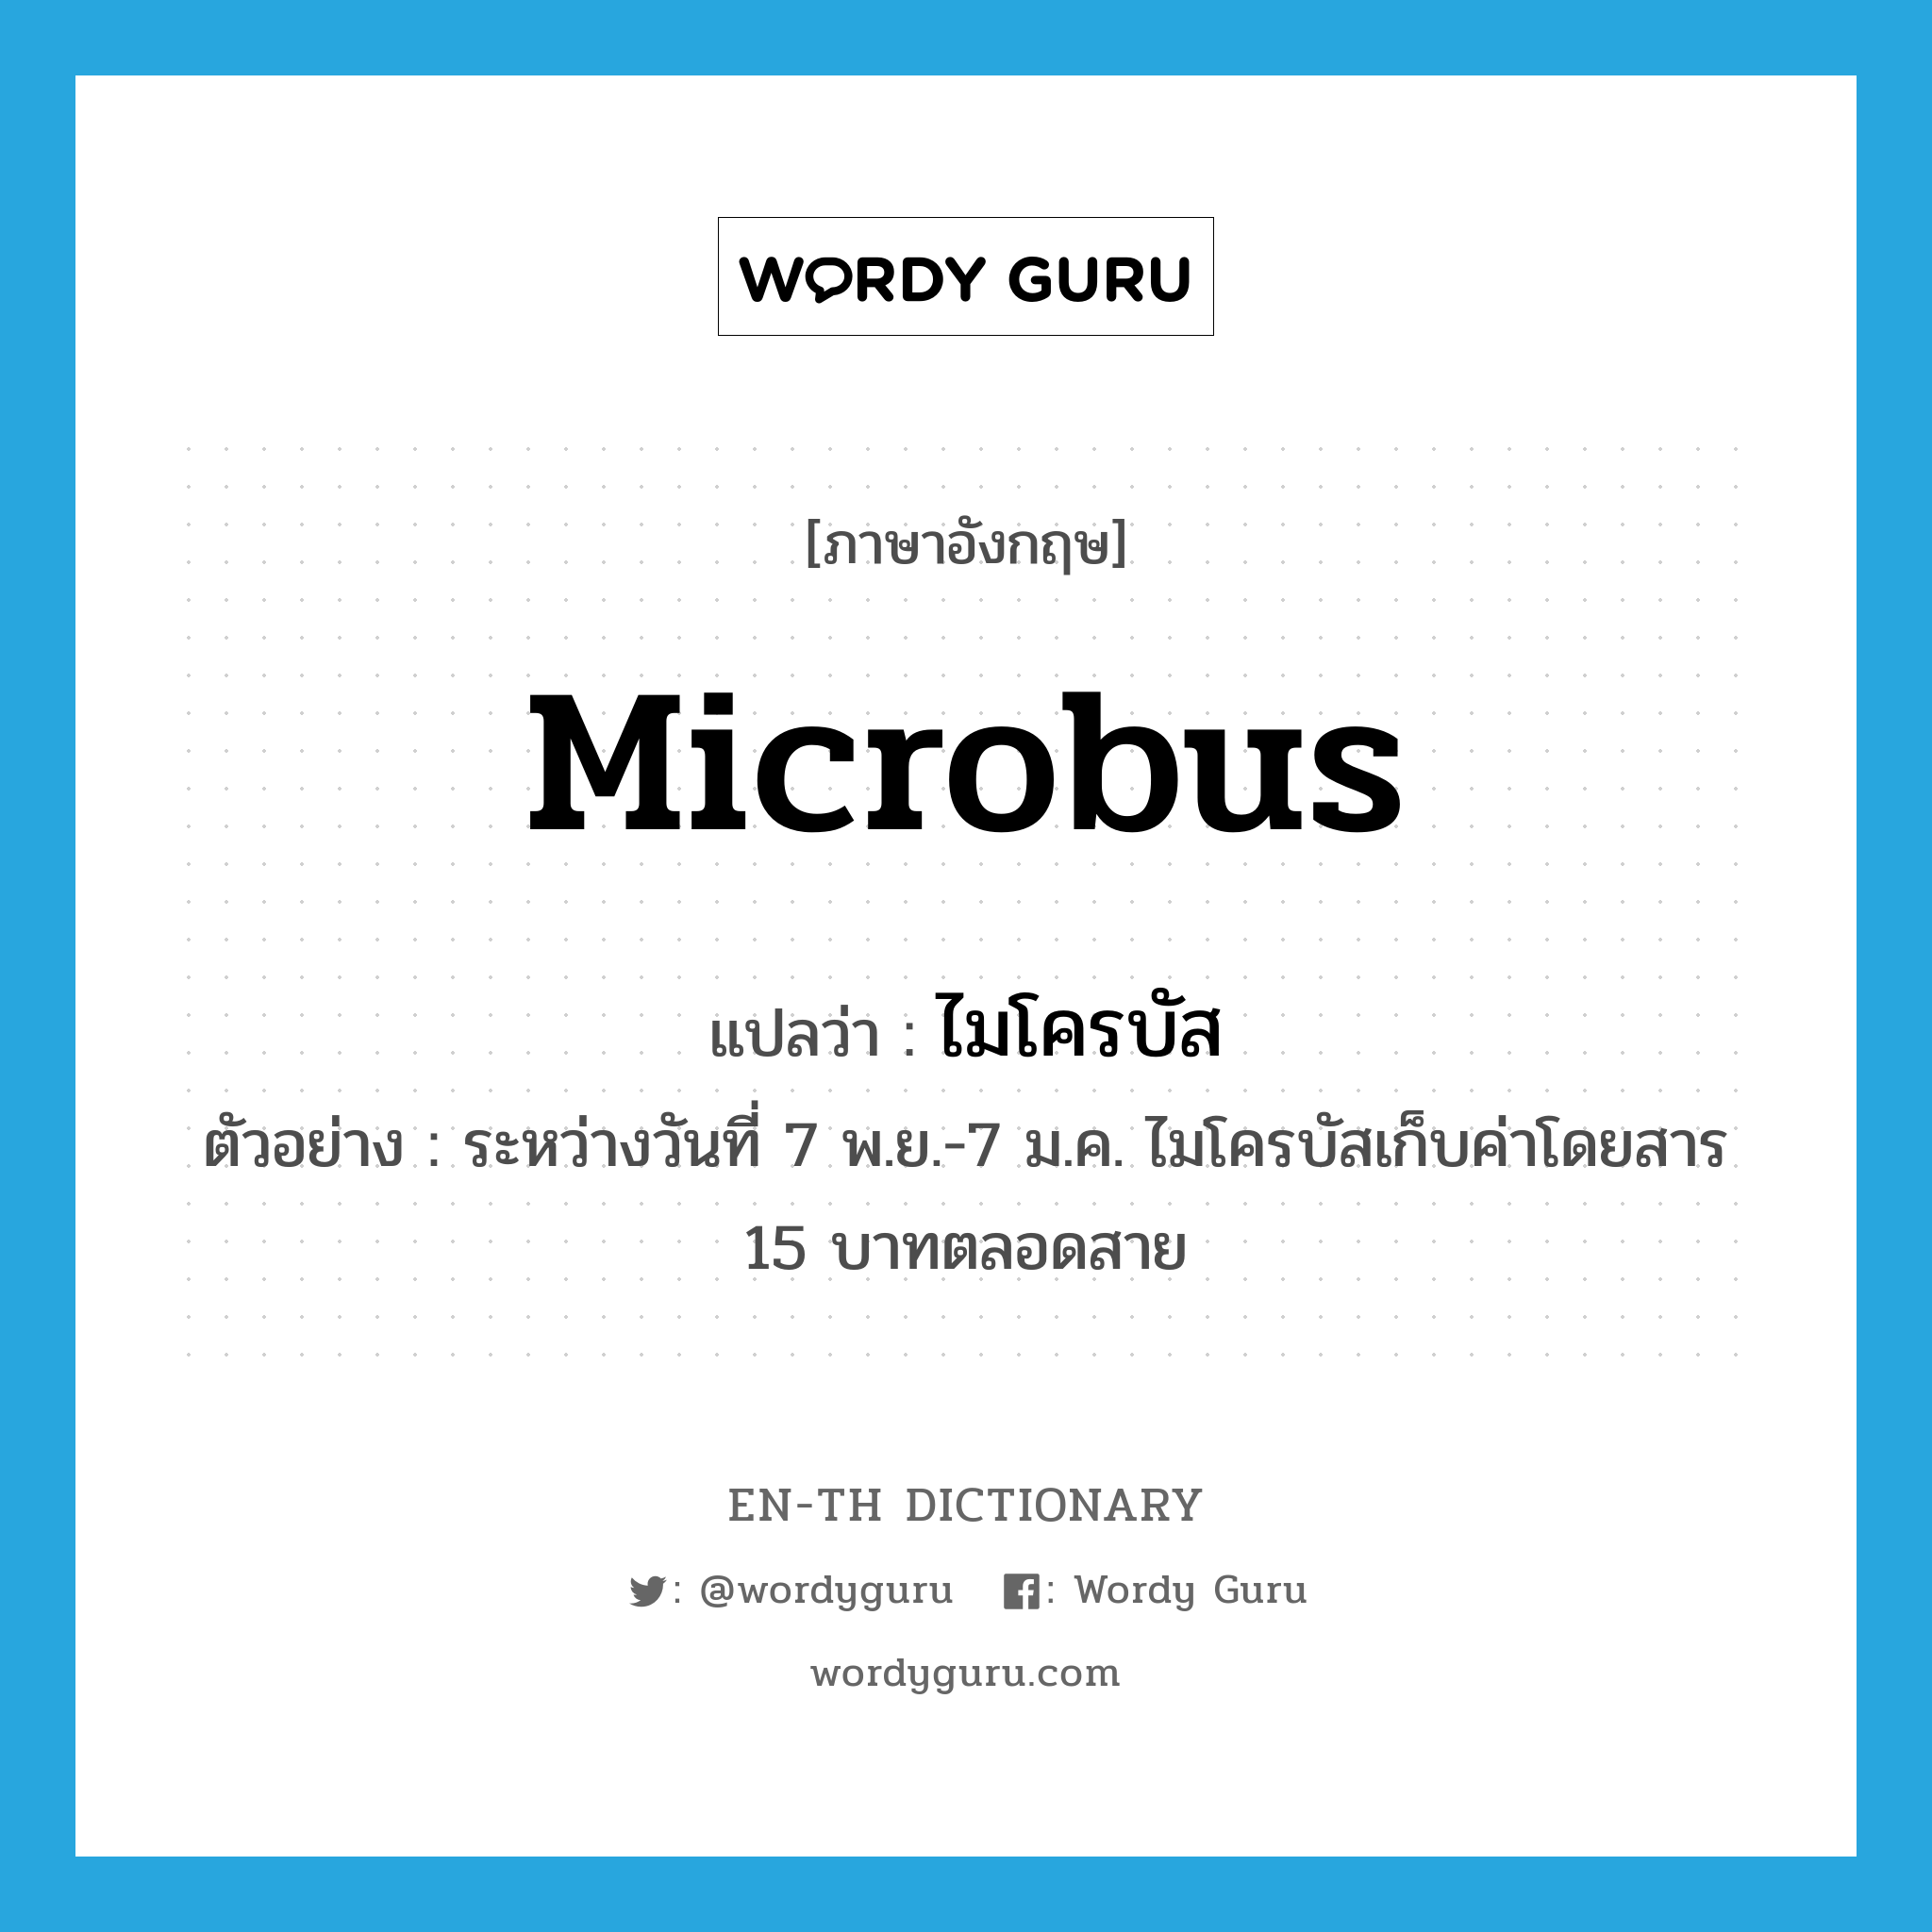 microbus แปลว่า?, คำศัพท์ภาษาอังกฤษ microbus แปลว่า ไมโครบัส ประเภท N ตัวอย่าง ระหว่างวันที่ 7 พ.ย.-7 ม.ค. ไมโครบัสเก็บค่าโดยสาร 15 บาทตลอดสาย หมวด N